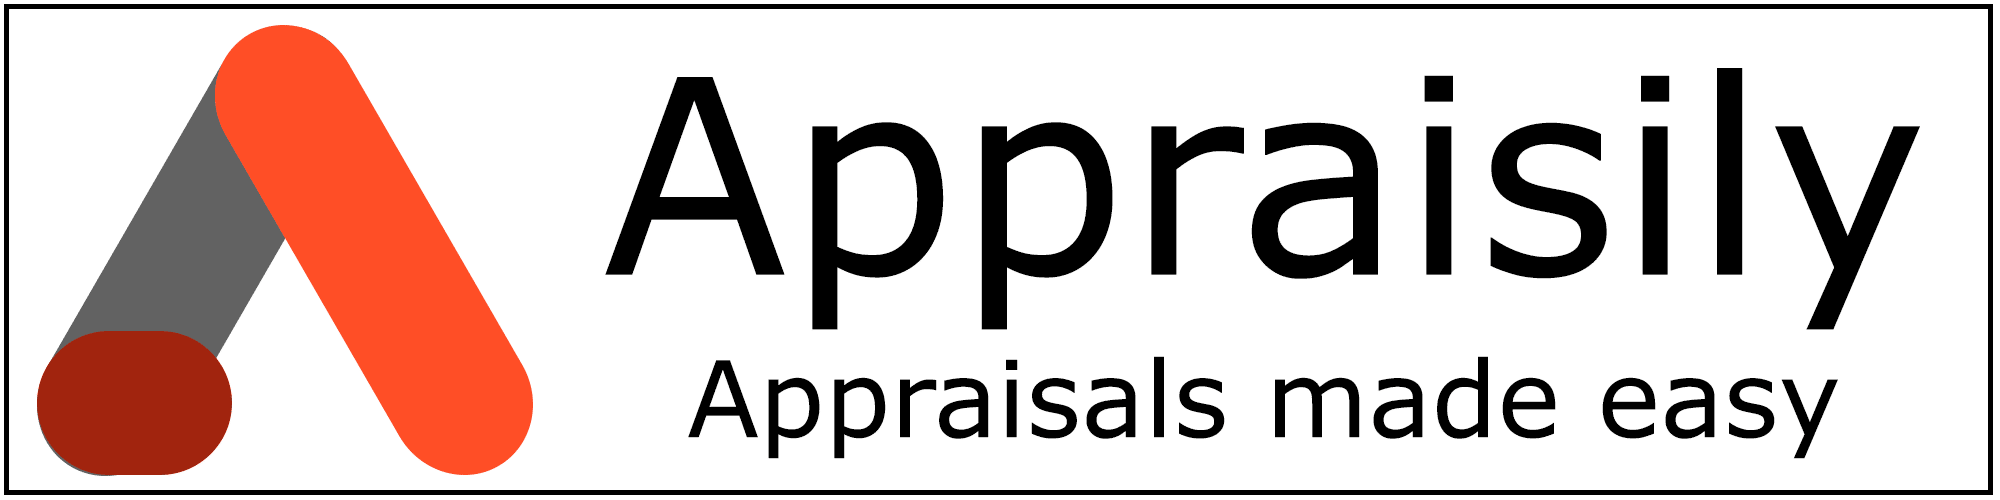 logo Appraisily